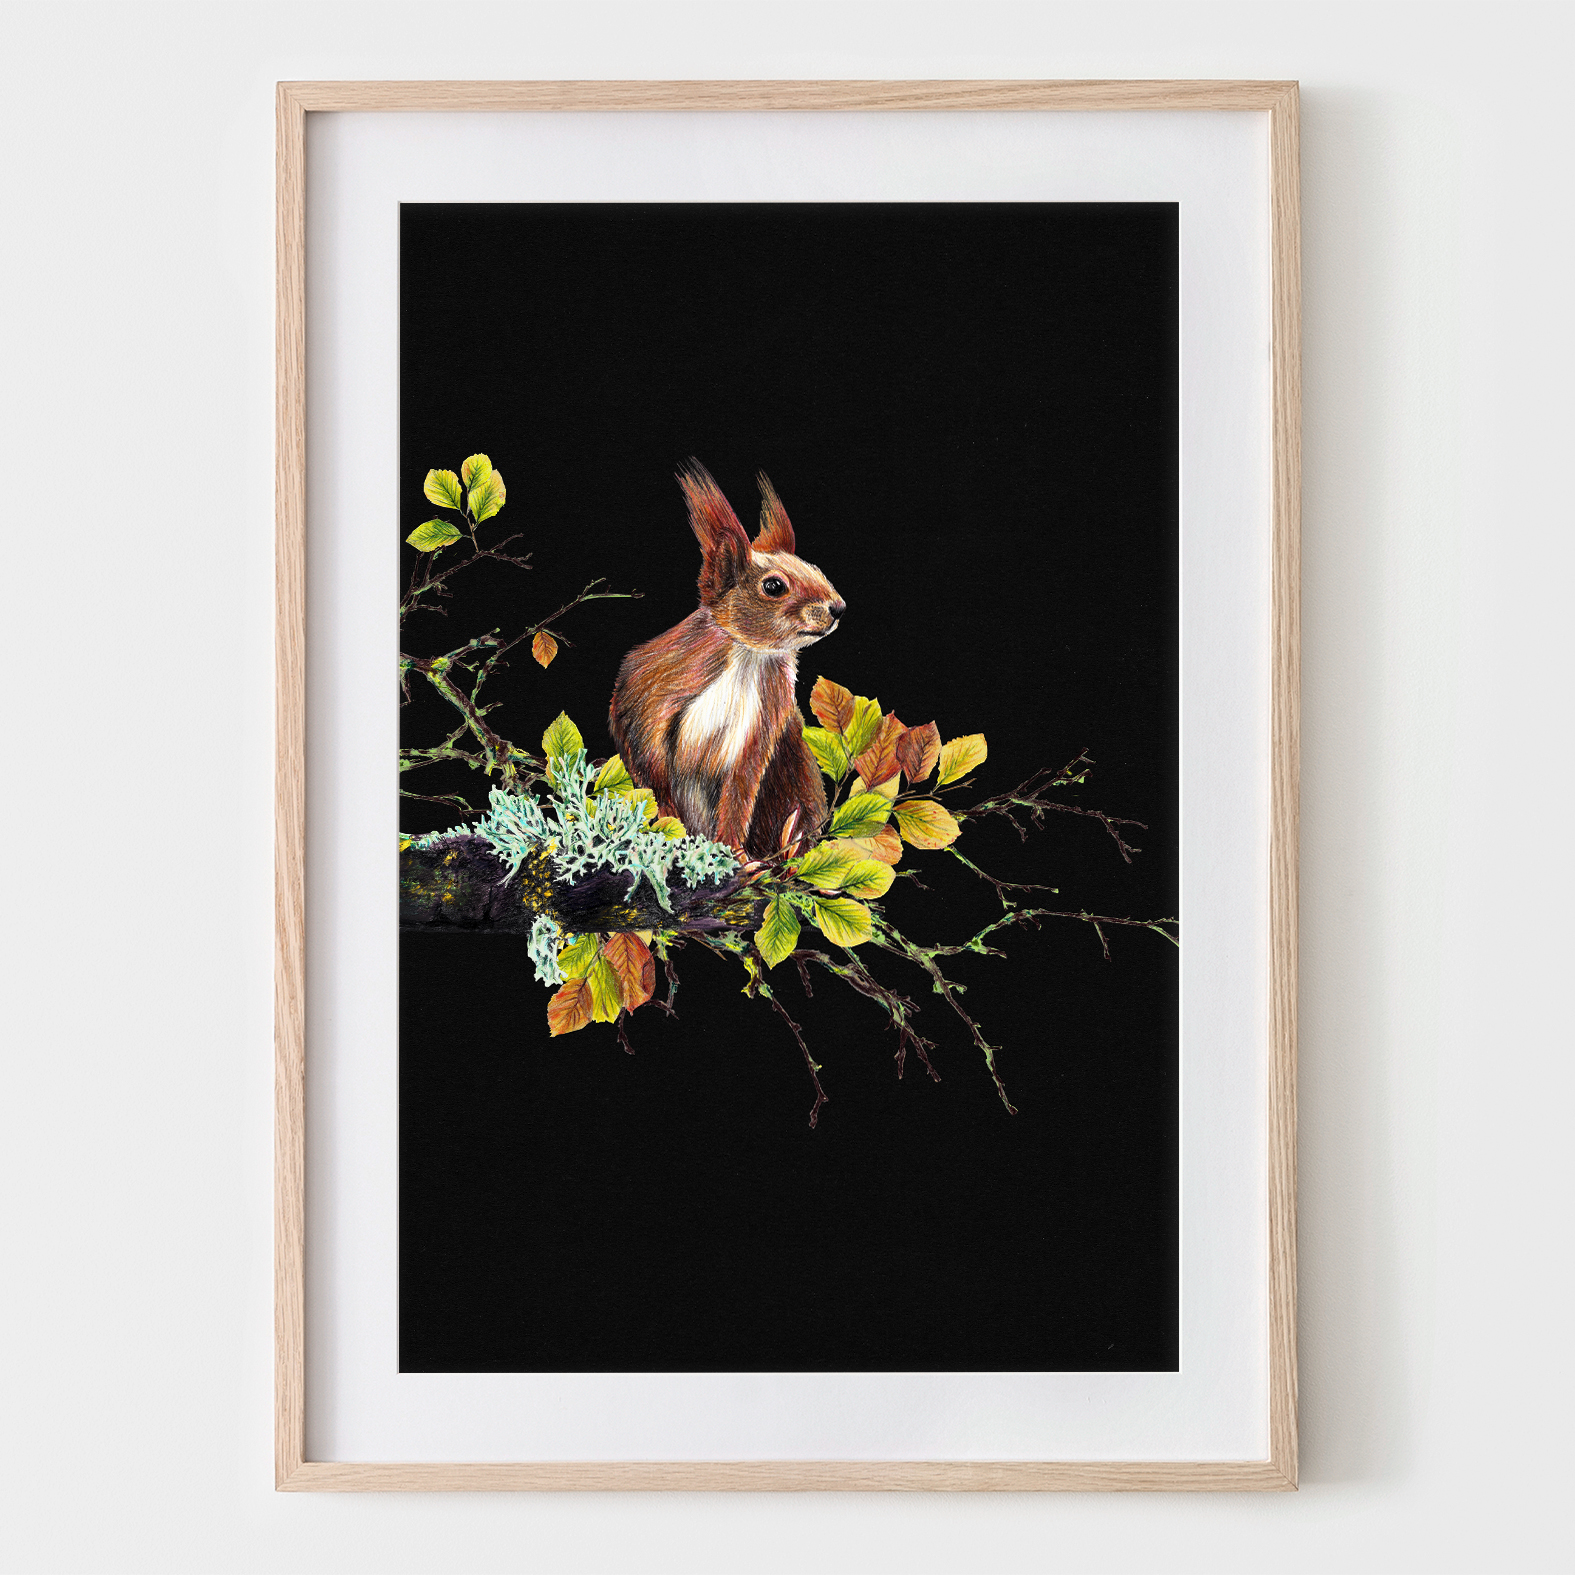 Eichhörnchen auf dem Ast, Fine Art Print, Giclée Print, Poster, Kunstdruck, Tier Zeichnung